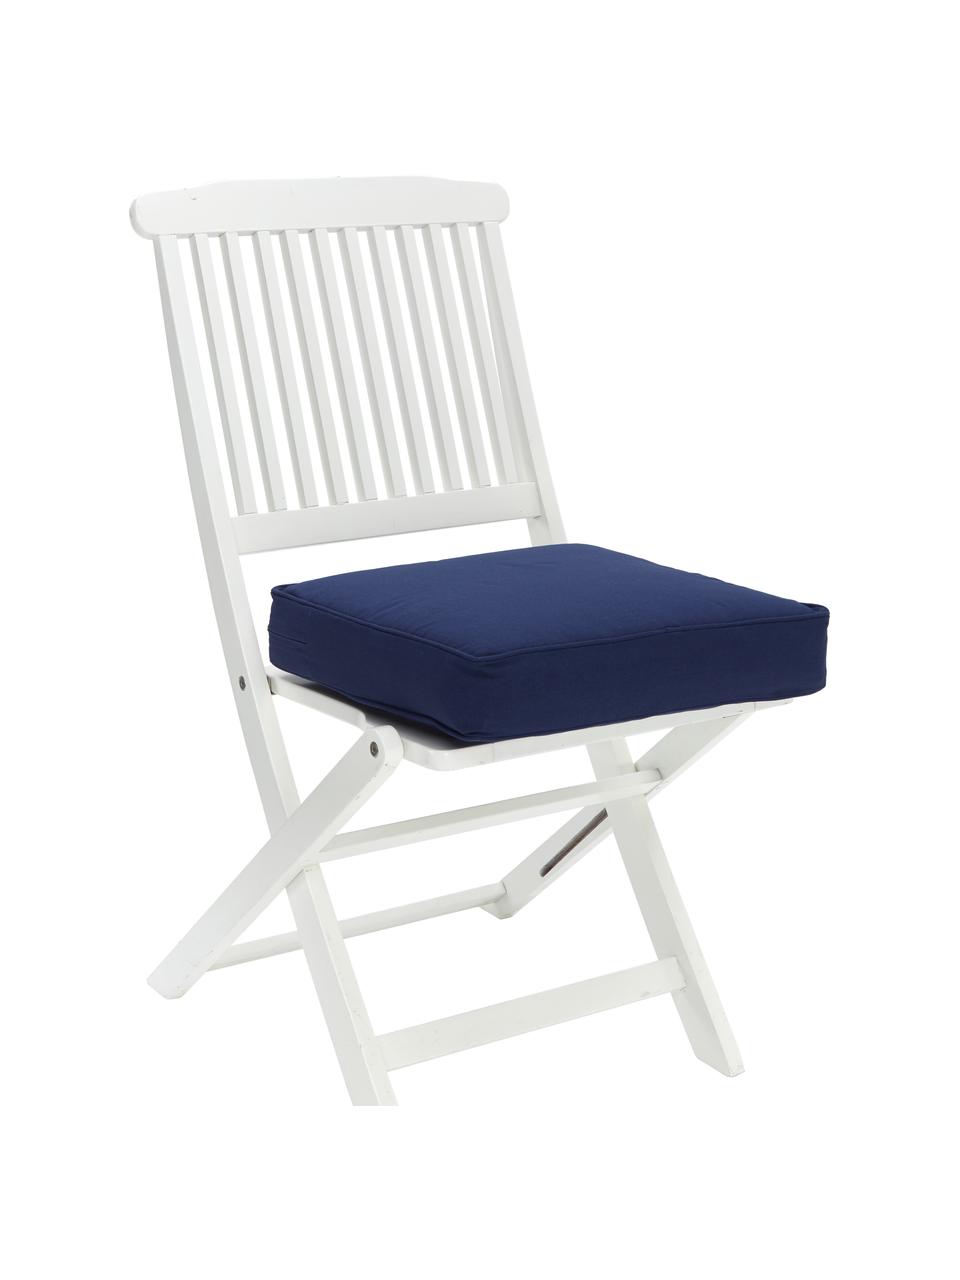 Cuscino sedia alto in cotone blu scuro Zoey, Rivestimento: 100% cotone, Blu scuro, Larg. 40 x Lung. 40 cm